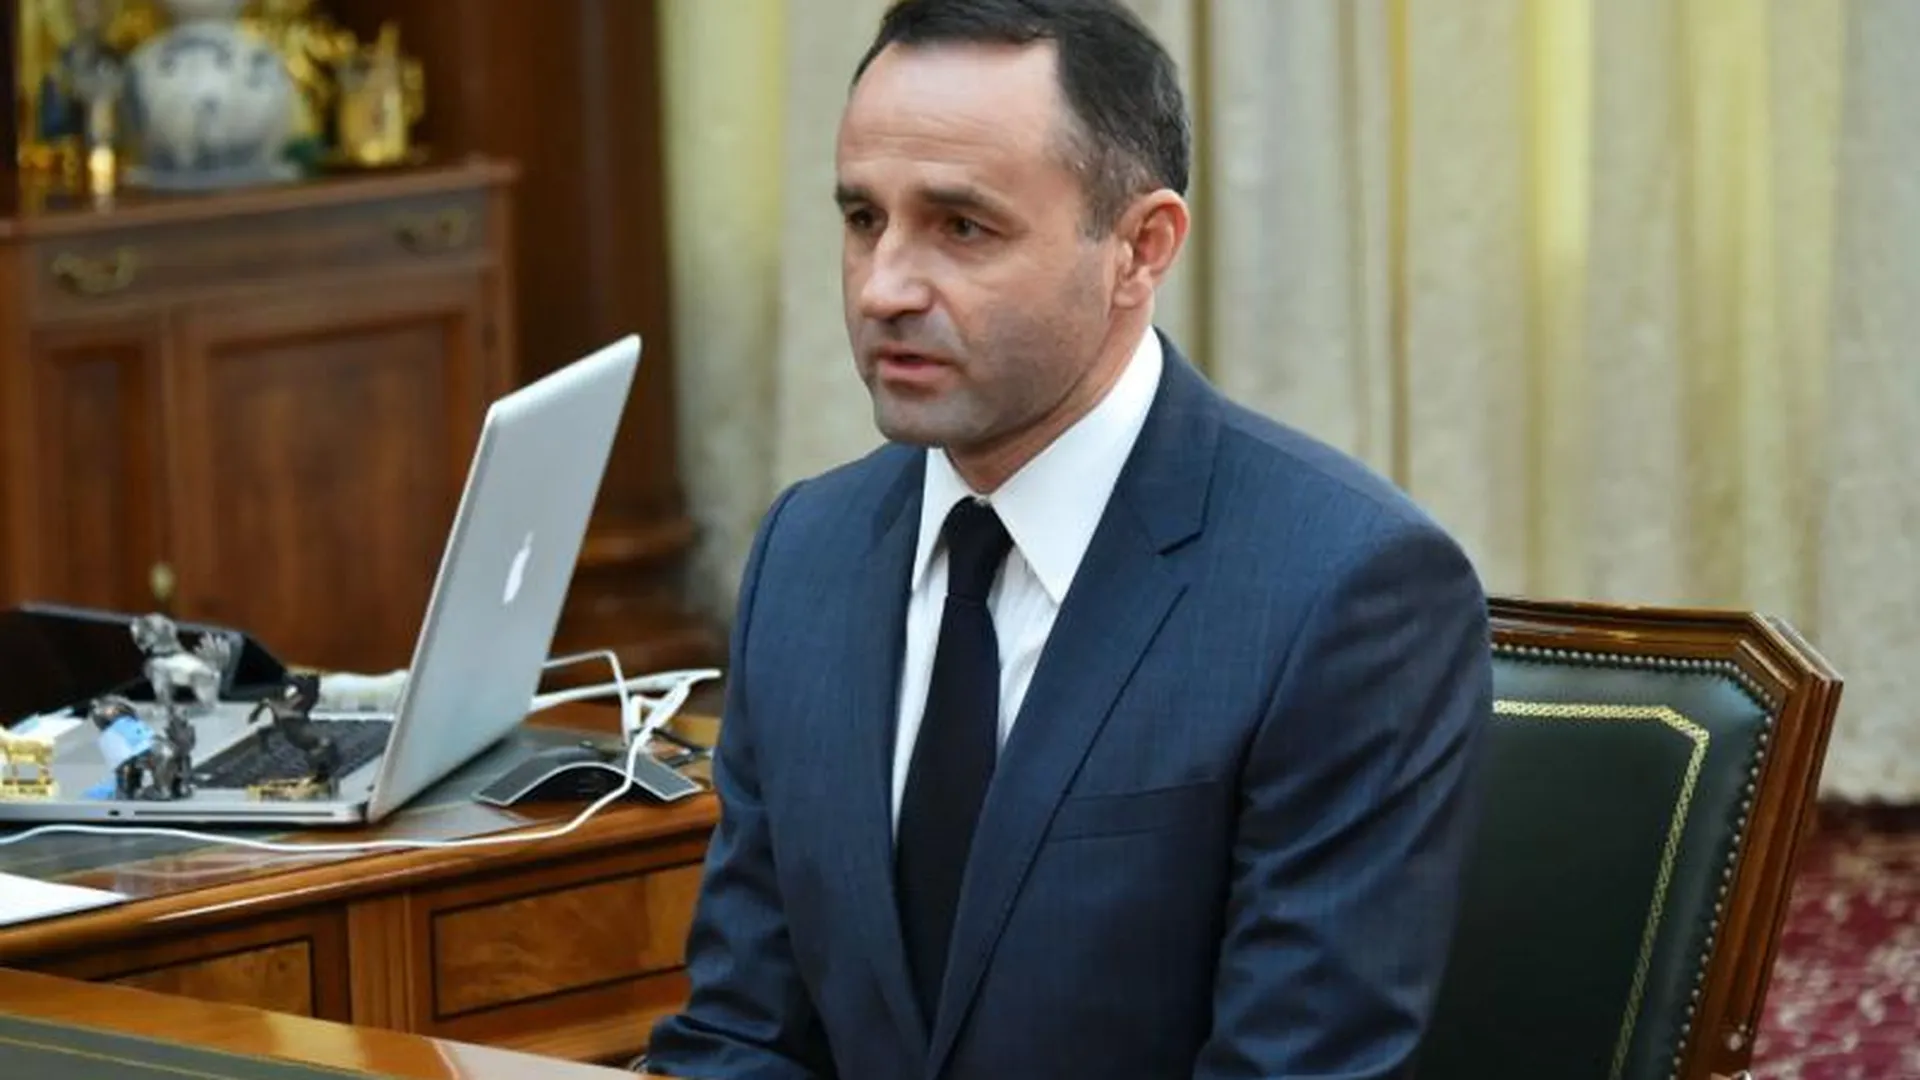 Сапунов принял присягу и вступил в должность главы Красногорского района